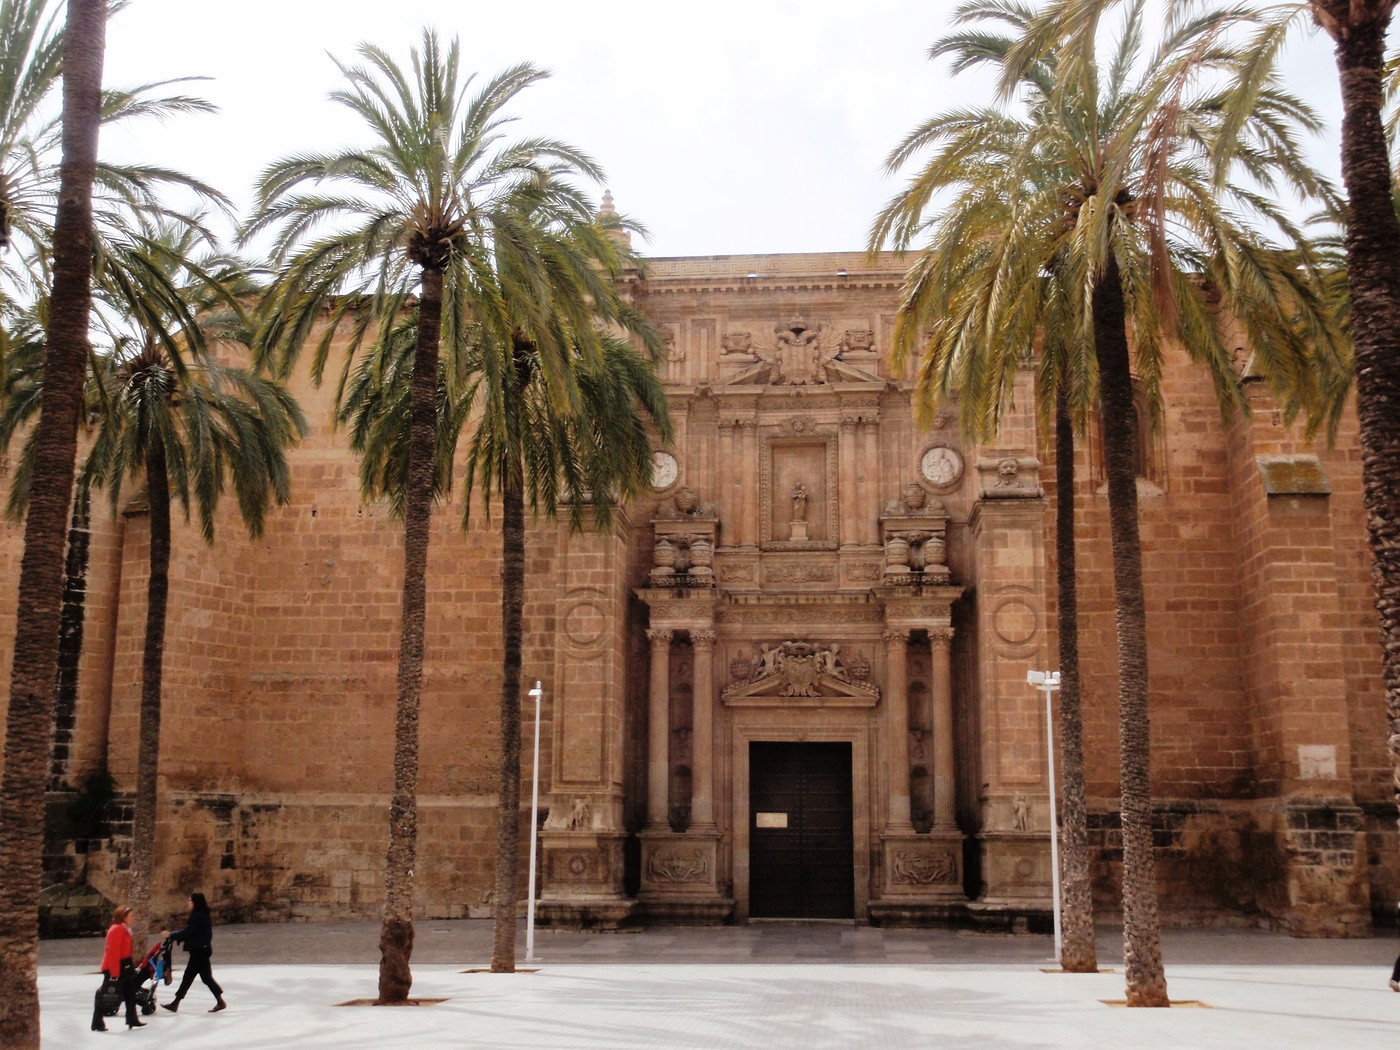 Catedral de Almería.